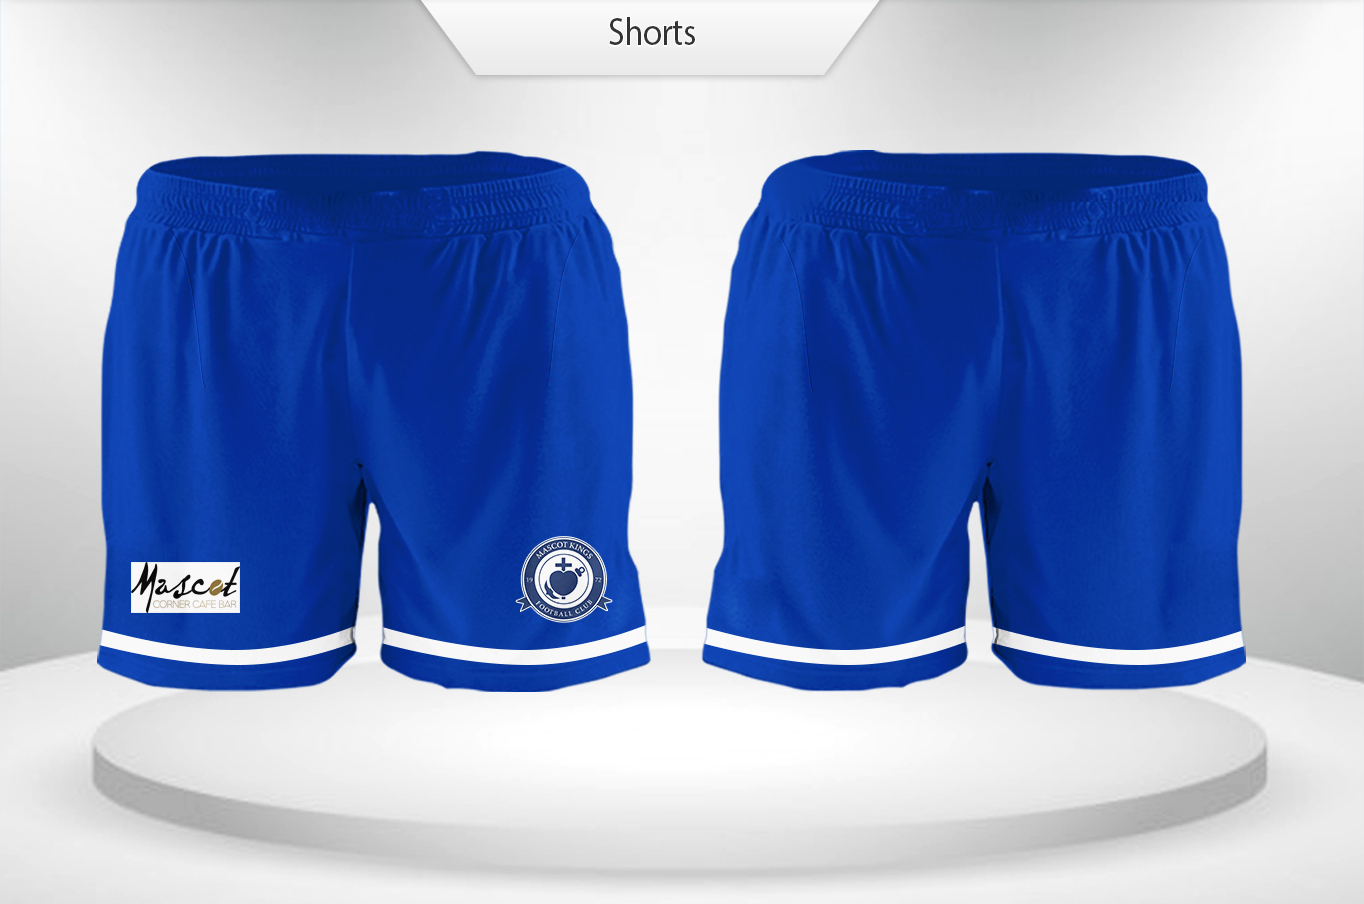 Mascot FC Shorts Design.JPG